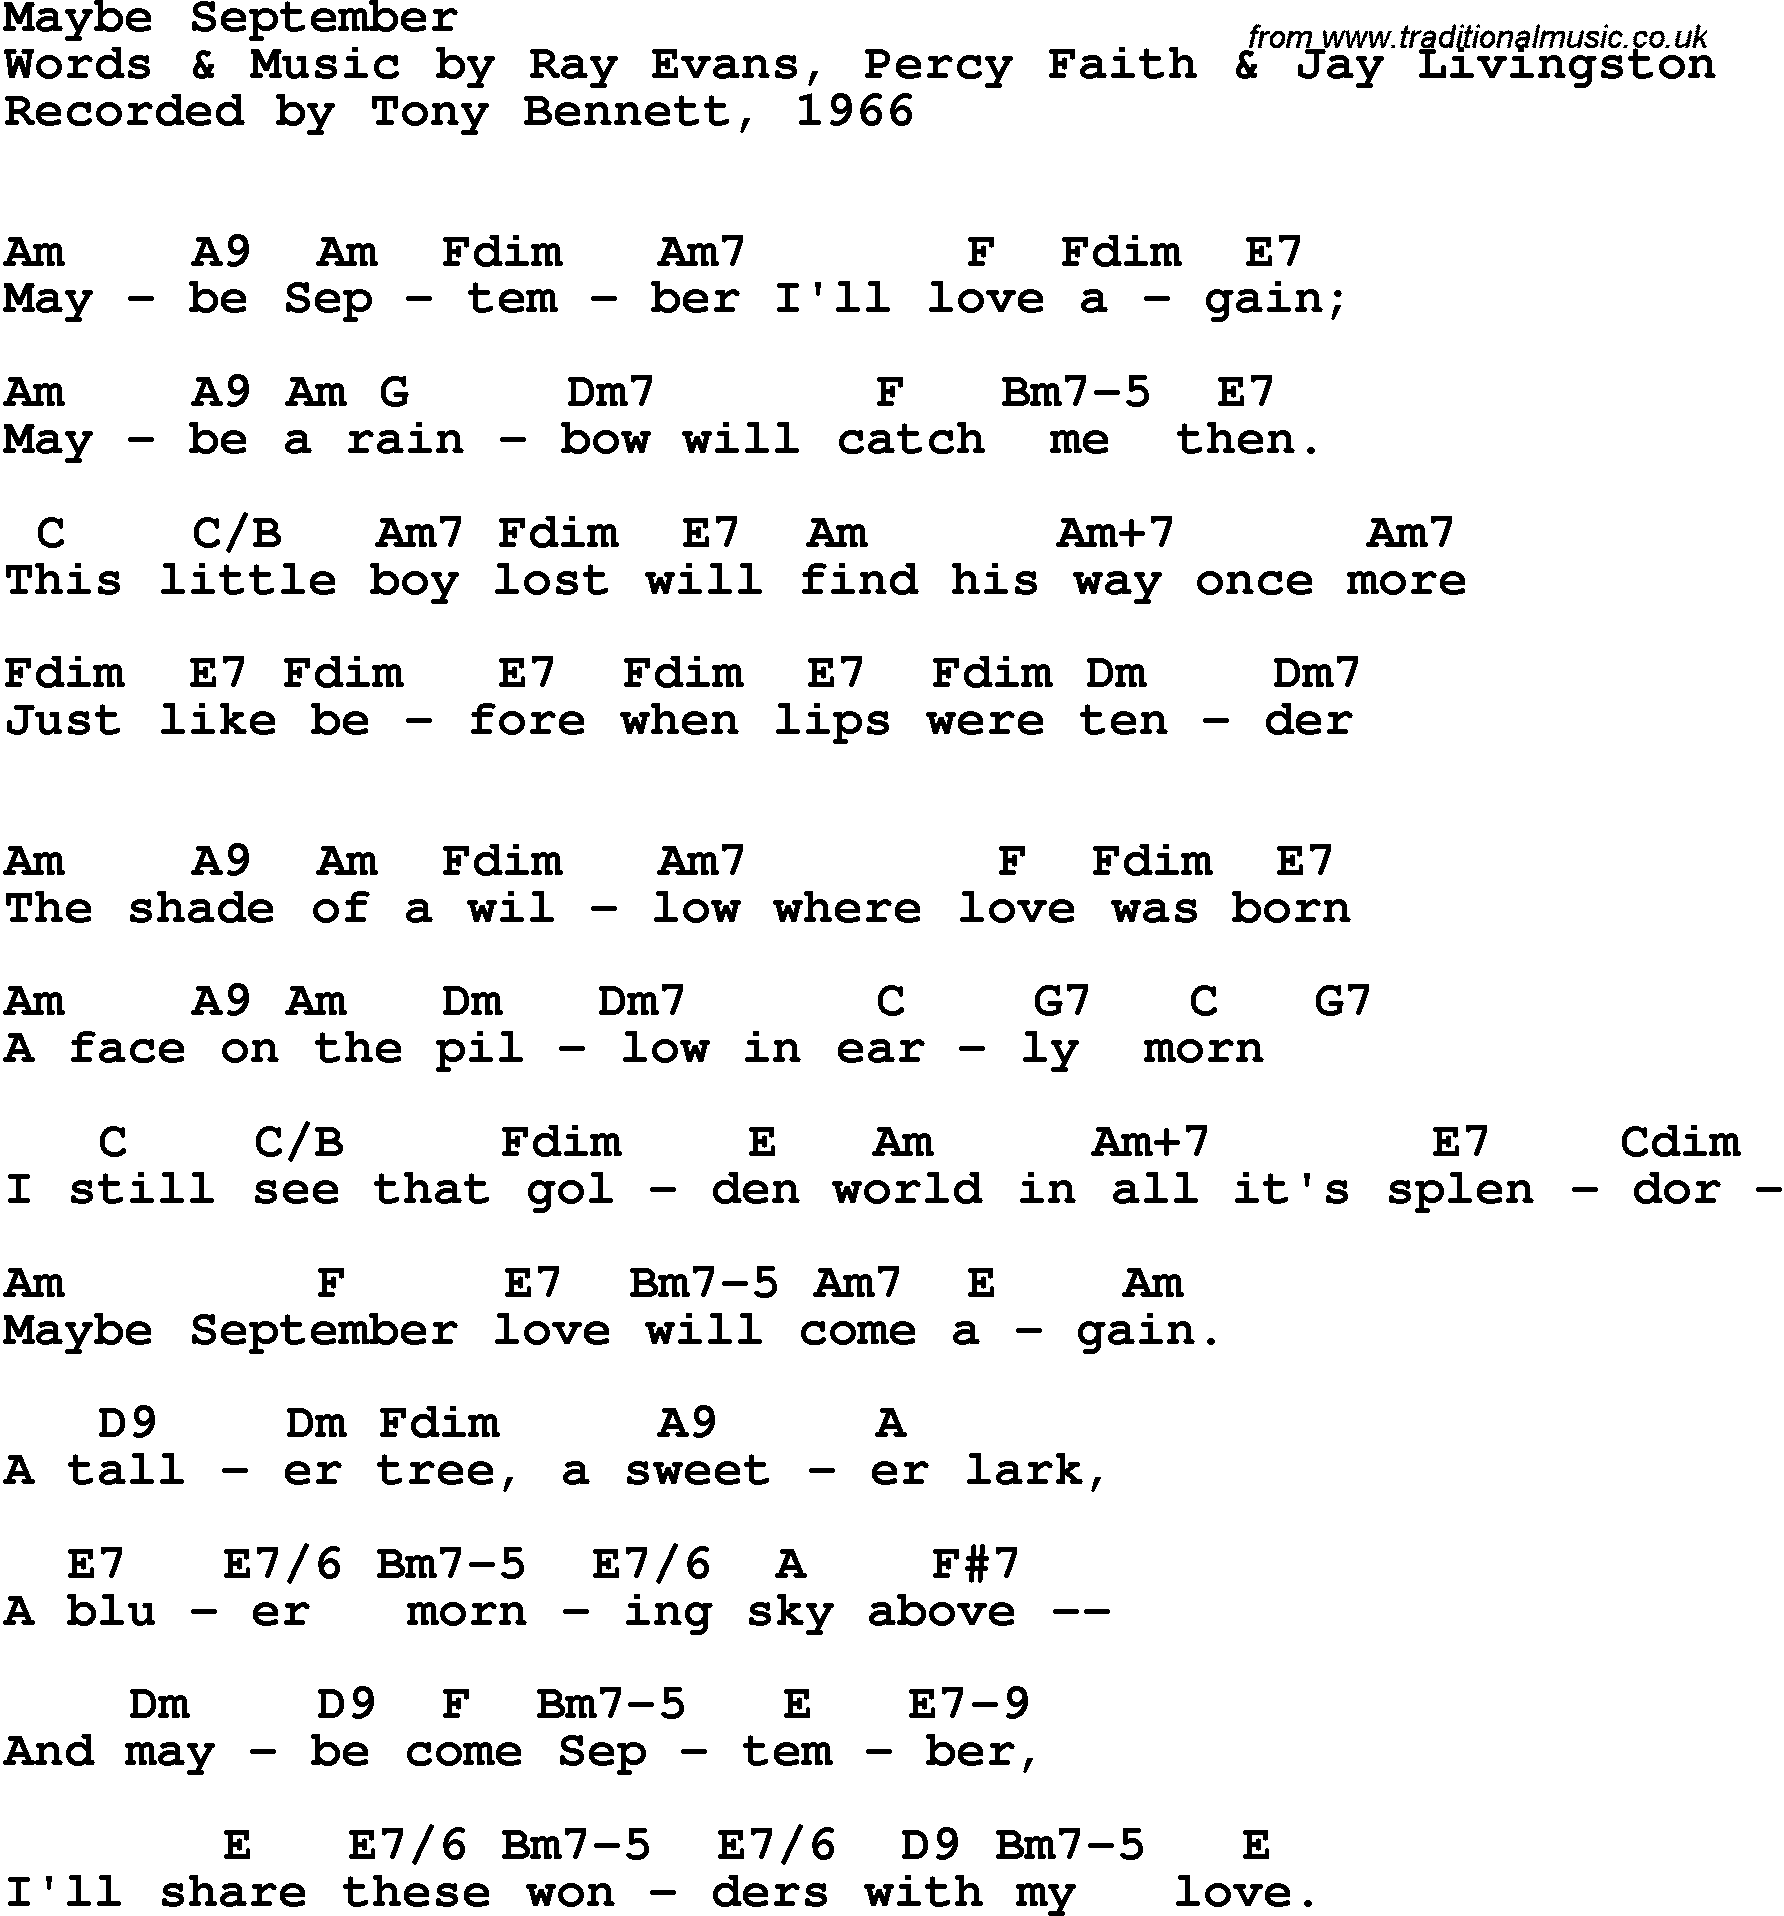 Song Lyrics with guitar chords for Maybe September - Tony Bennett, 1966